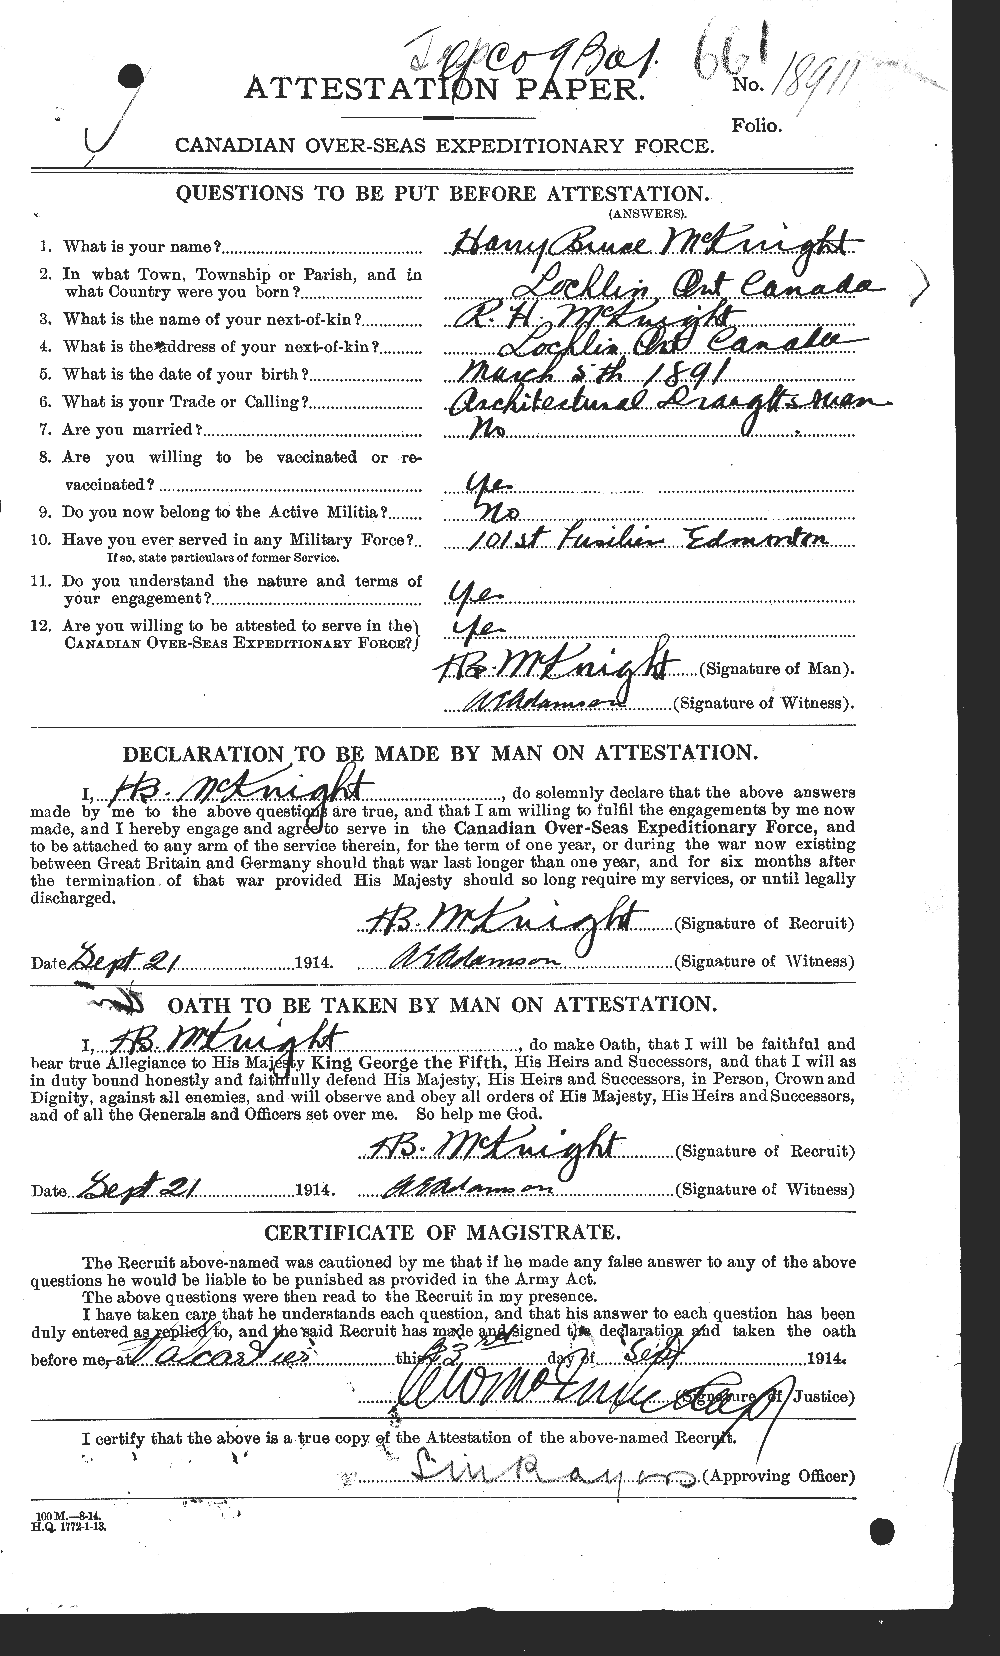 Dossiers du Personnel de la Première Guerre mondiale - CEC 530719a